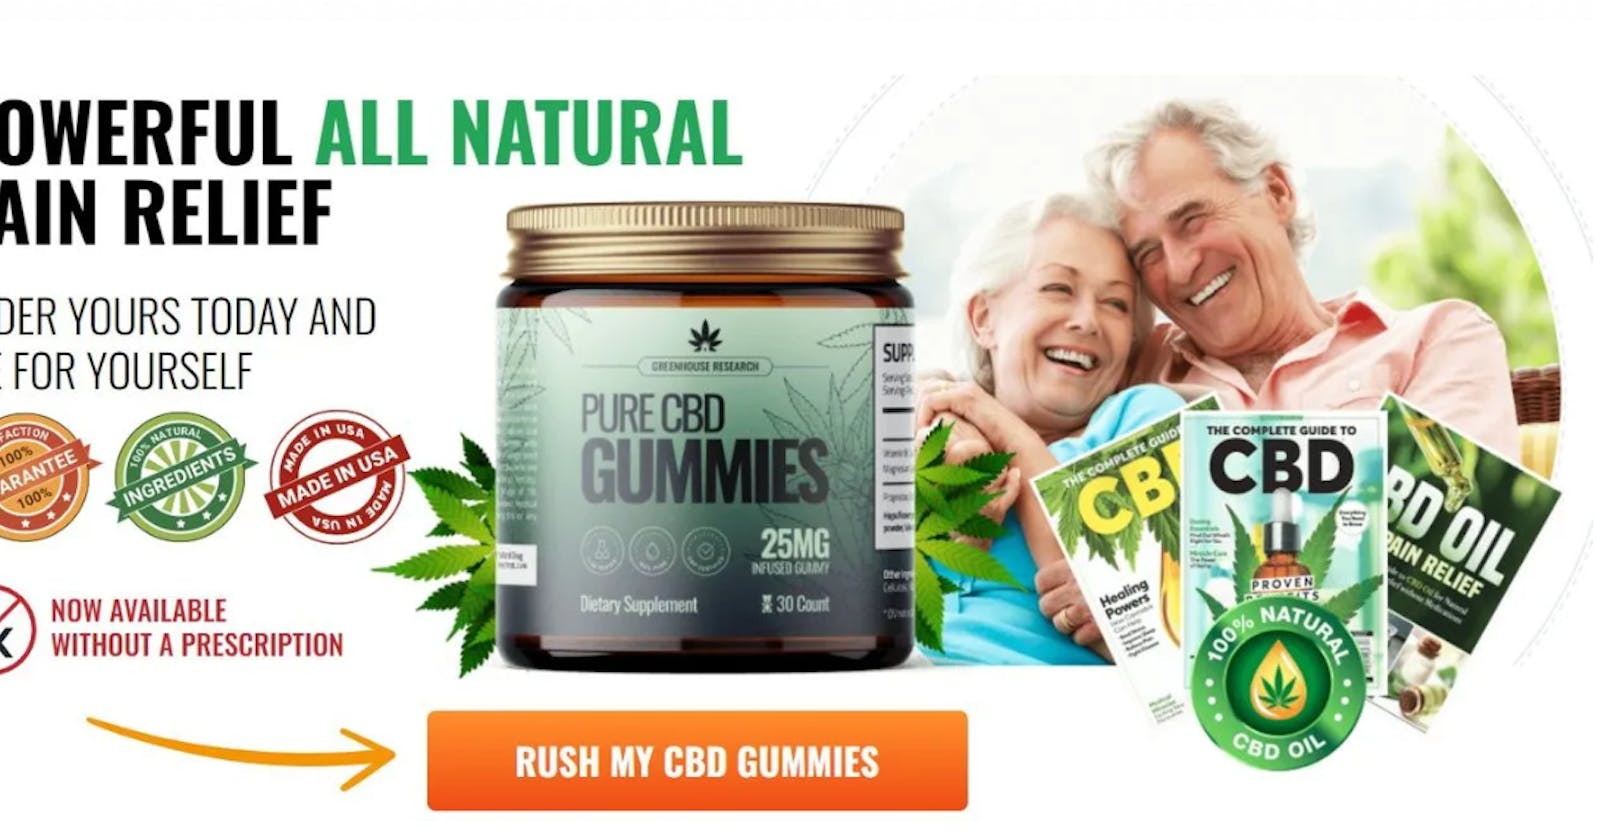 Earthmed CBD Gummies Reviews Benefits & 100% Natural!